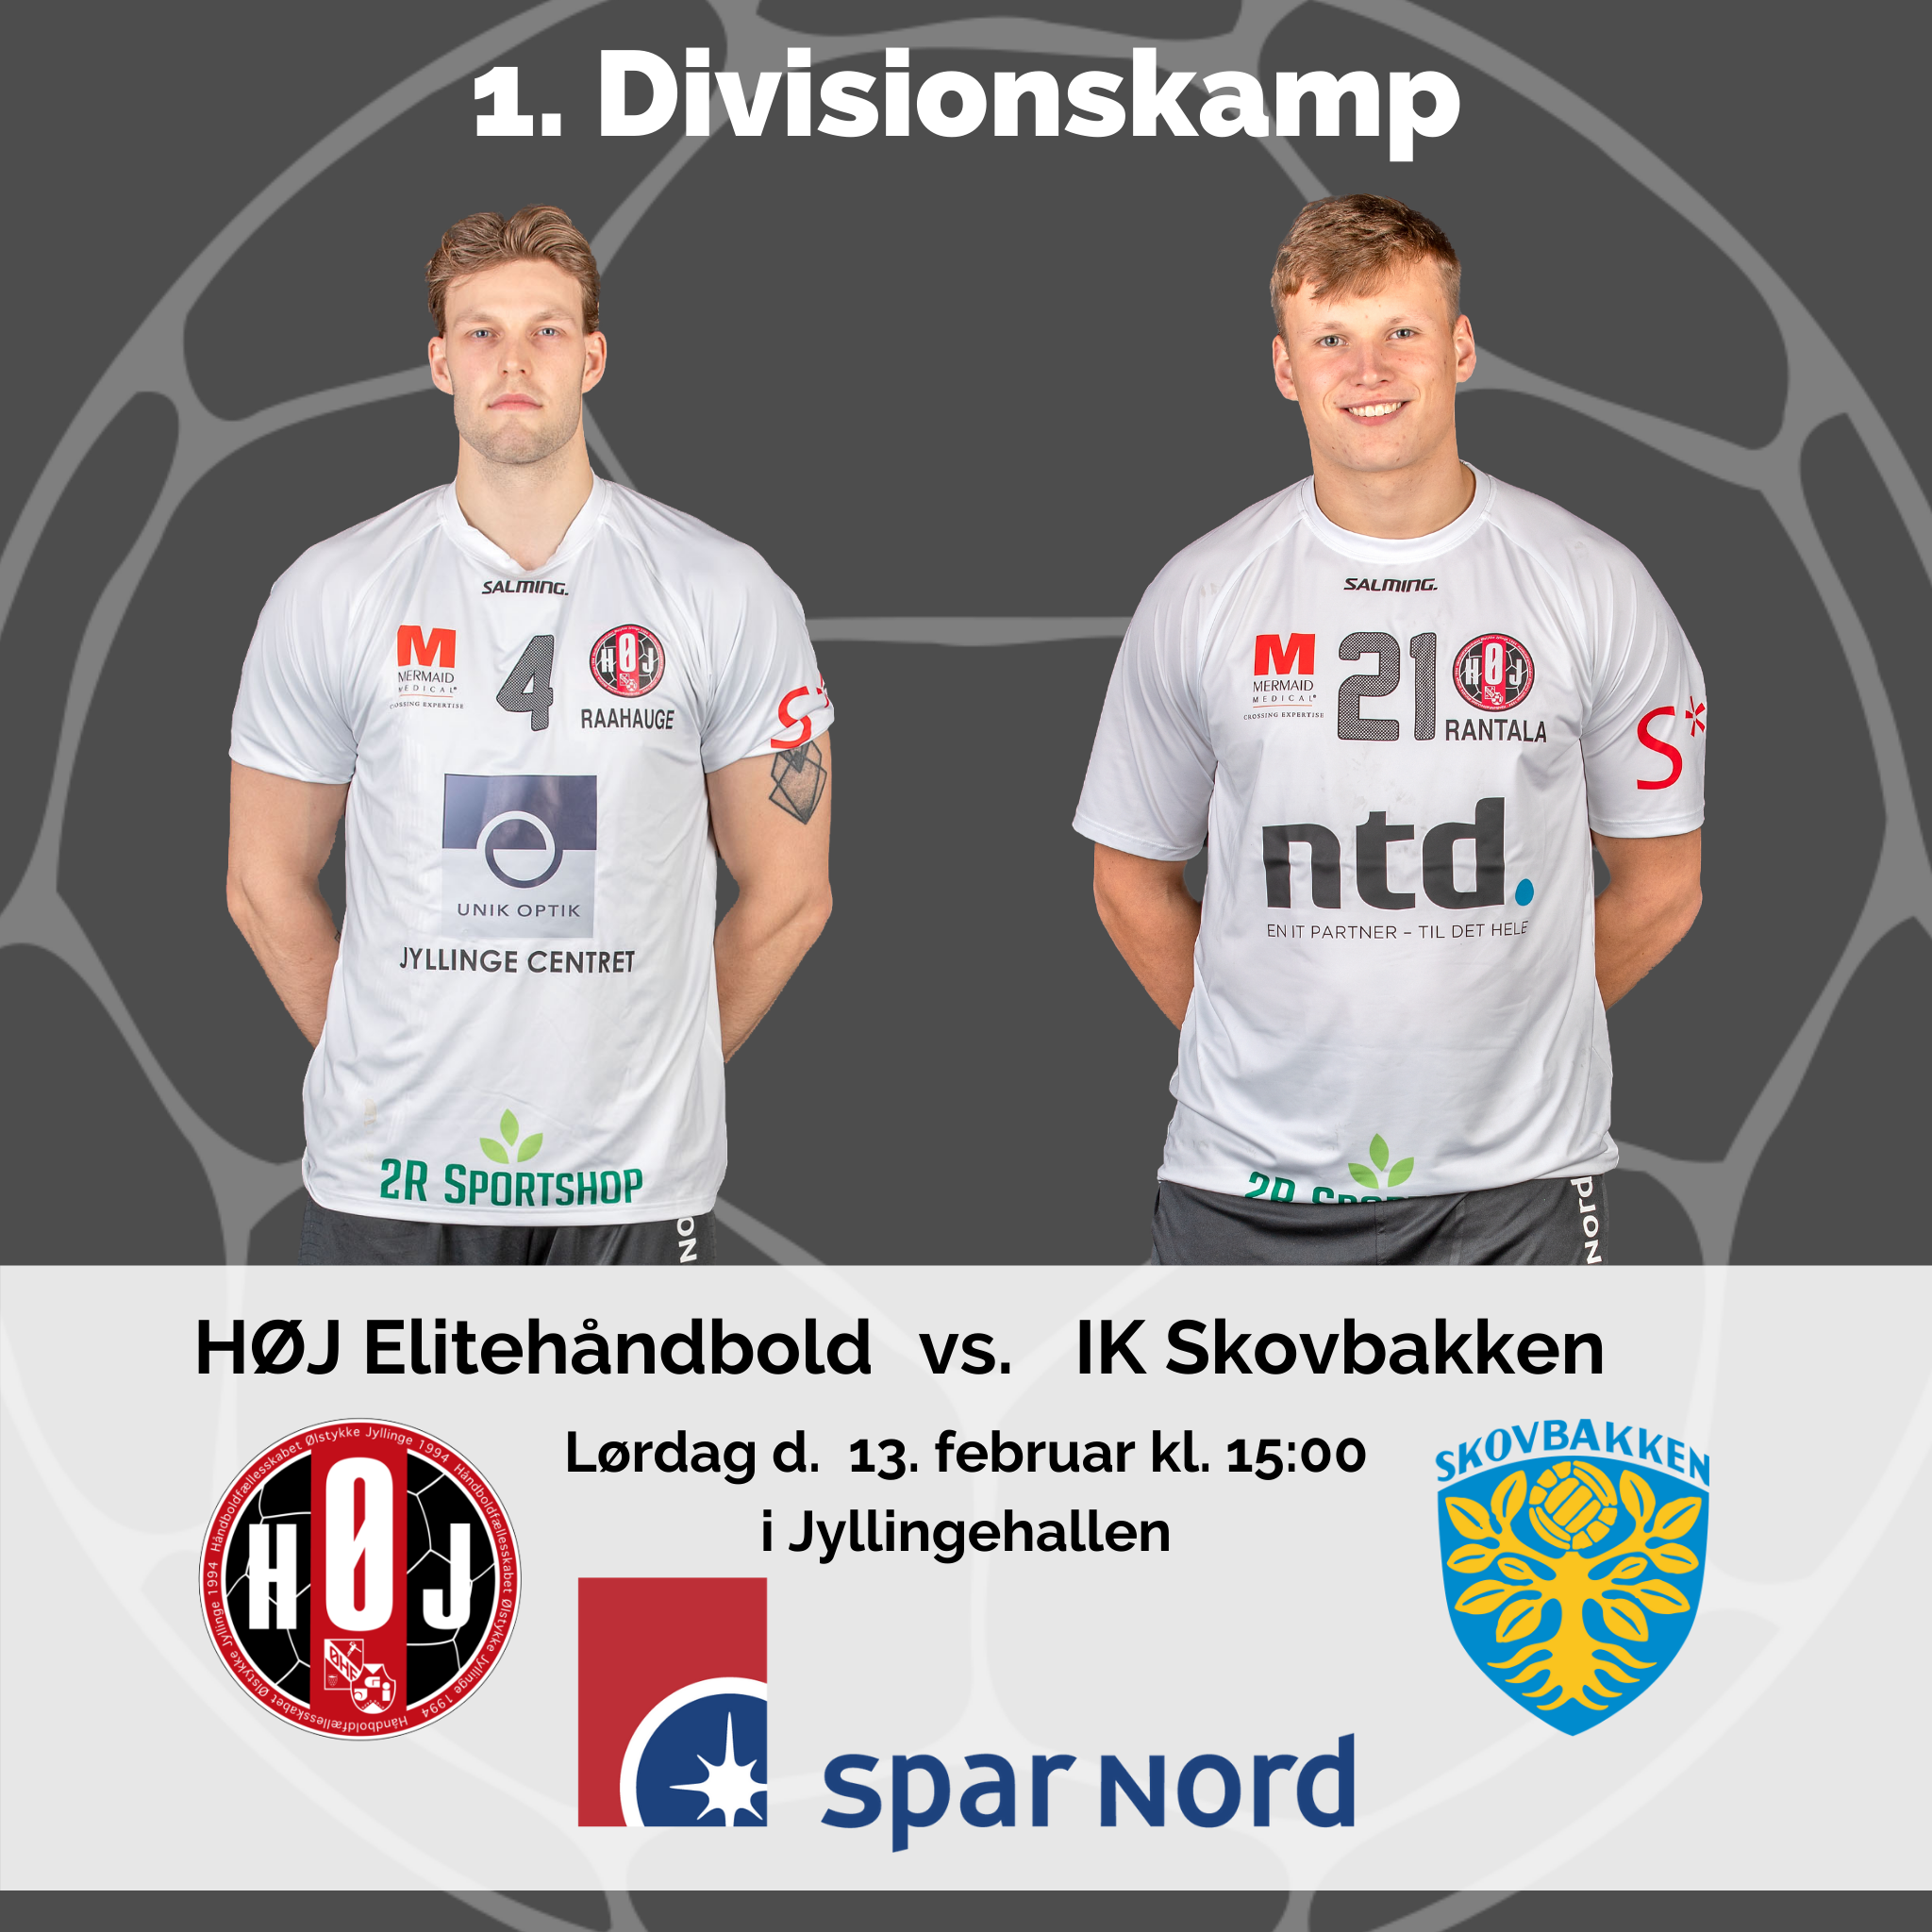 HØJ Elitehåndbold vs. IK Skovbakken